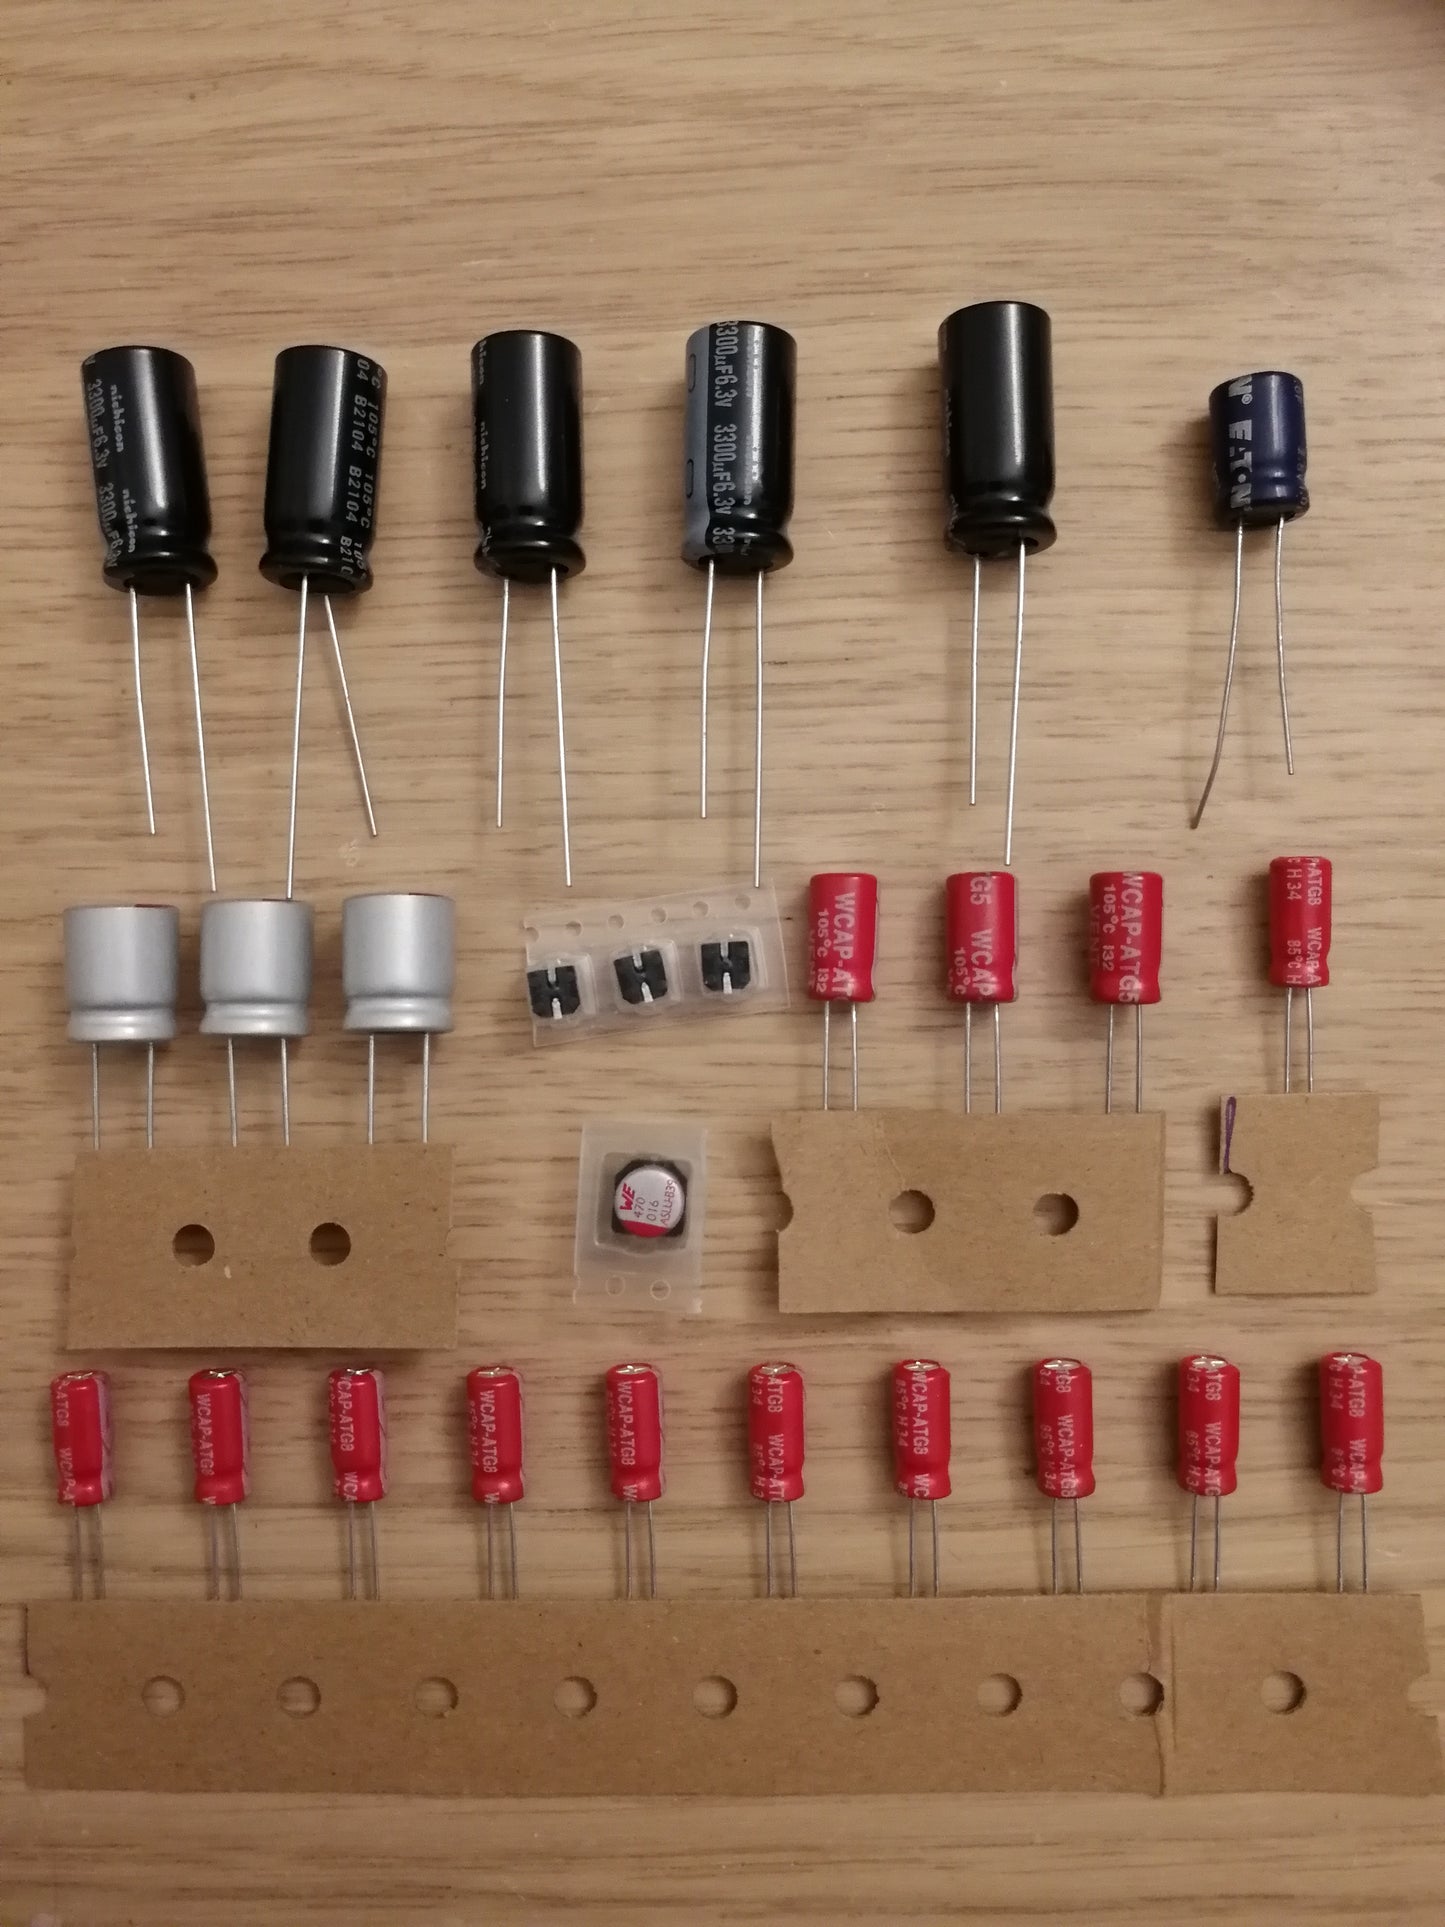 XBOX - Mainboard capacitor kits